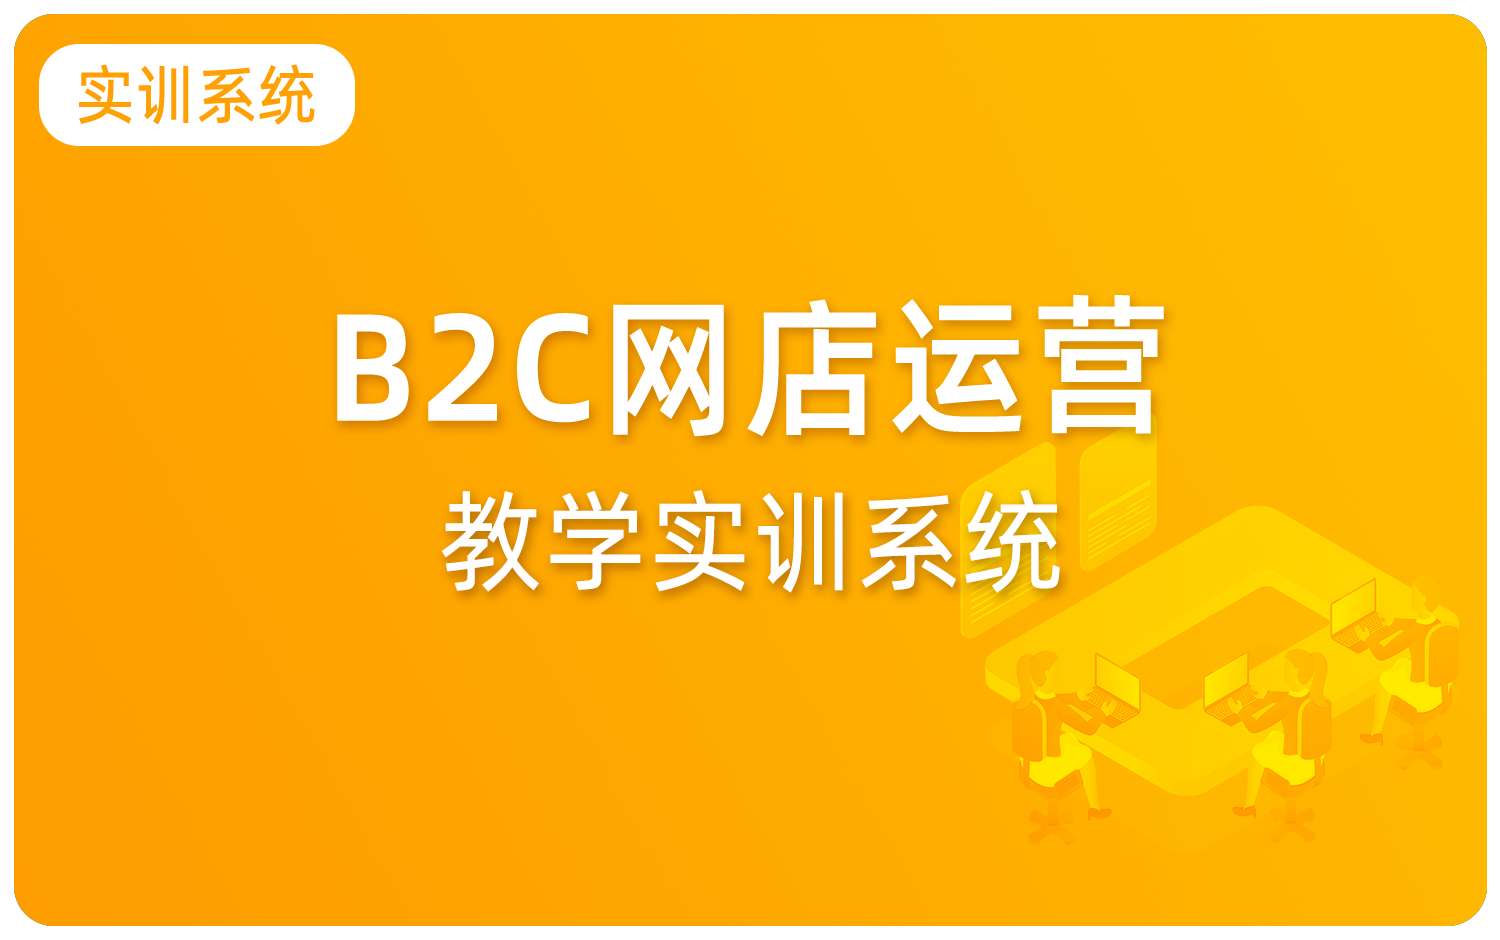 B2C网店(diàn)运营教學(xué)实训系统